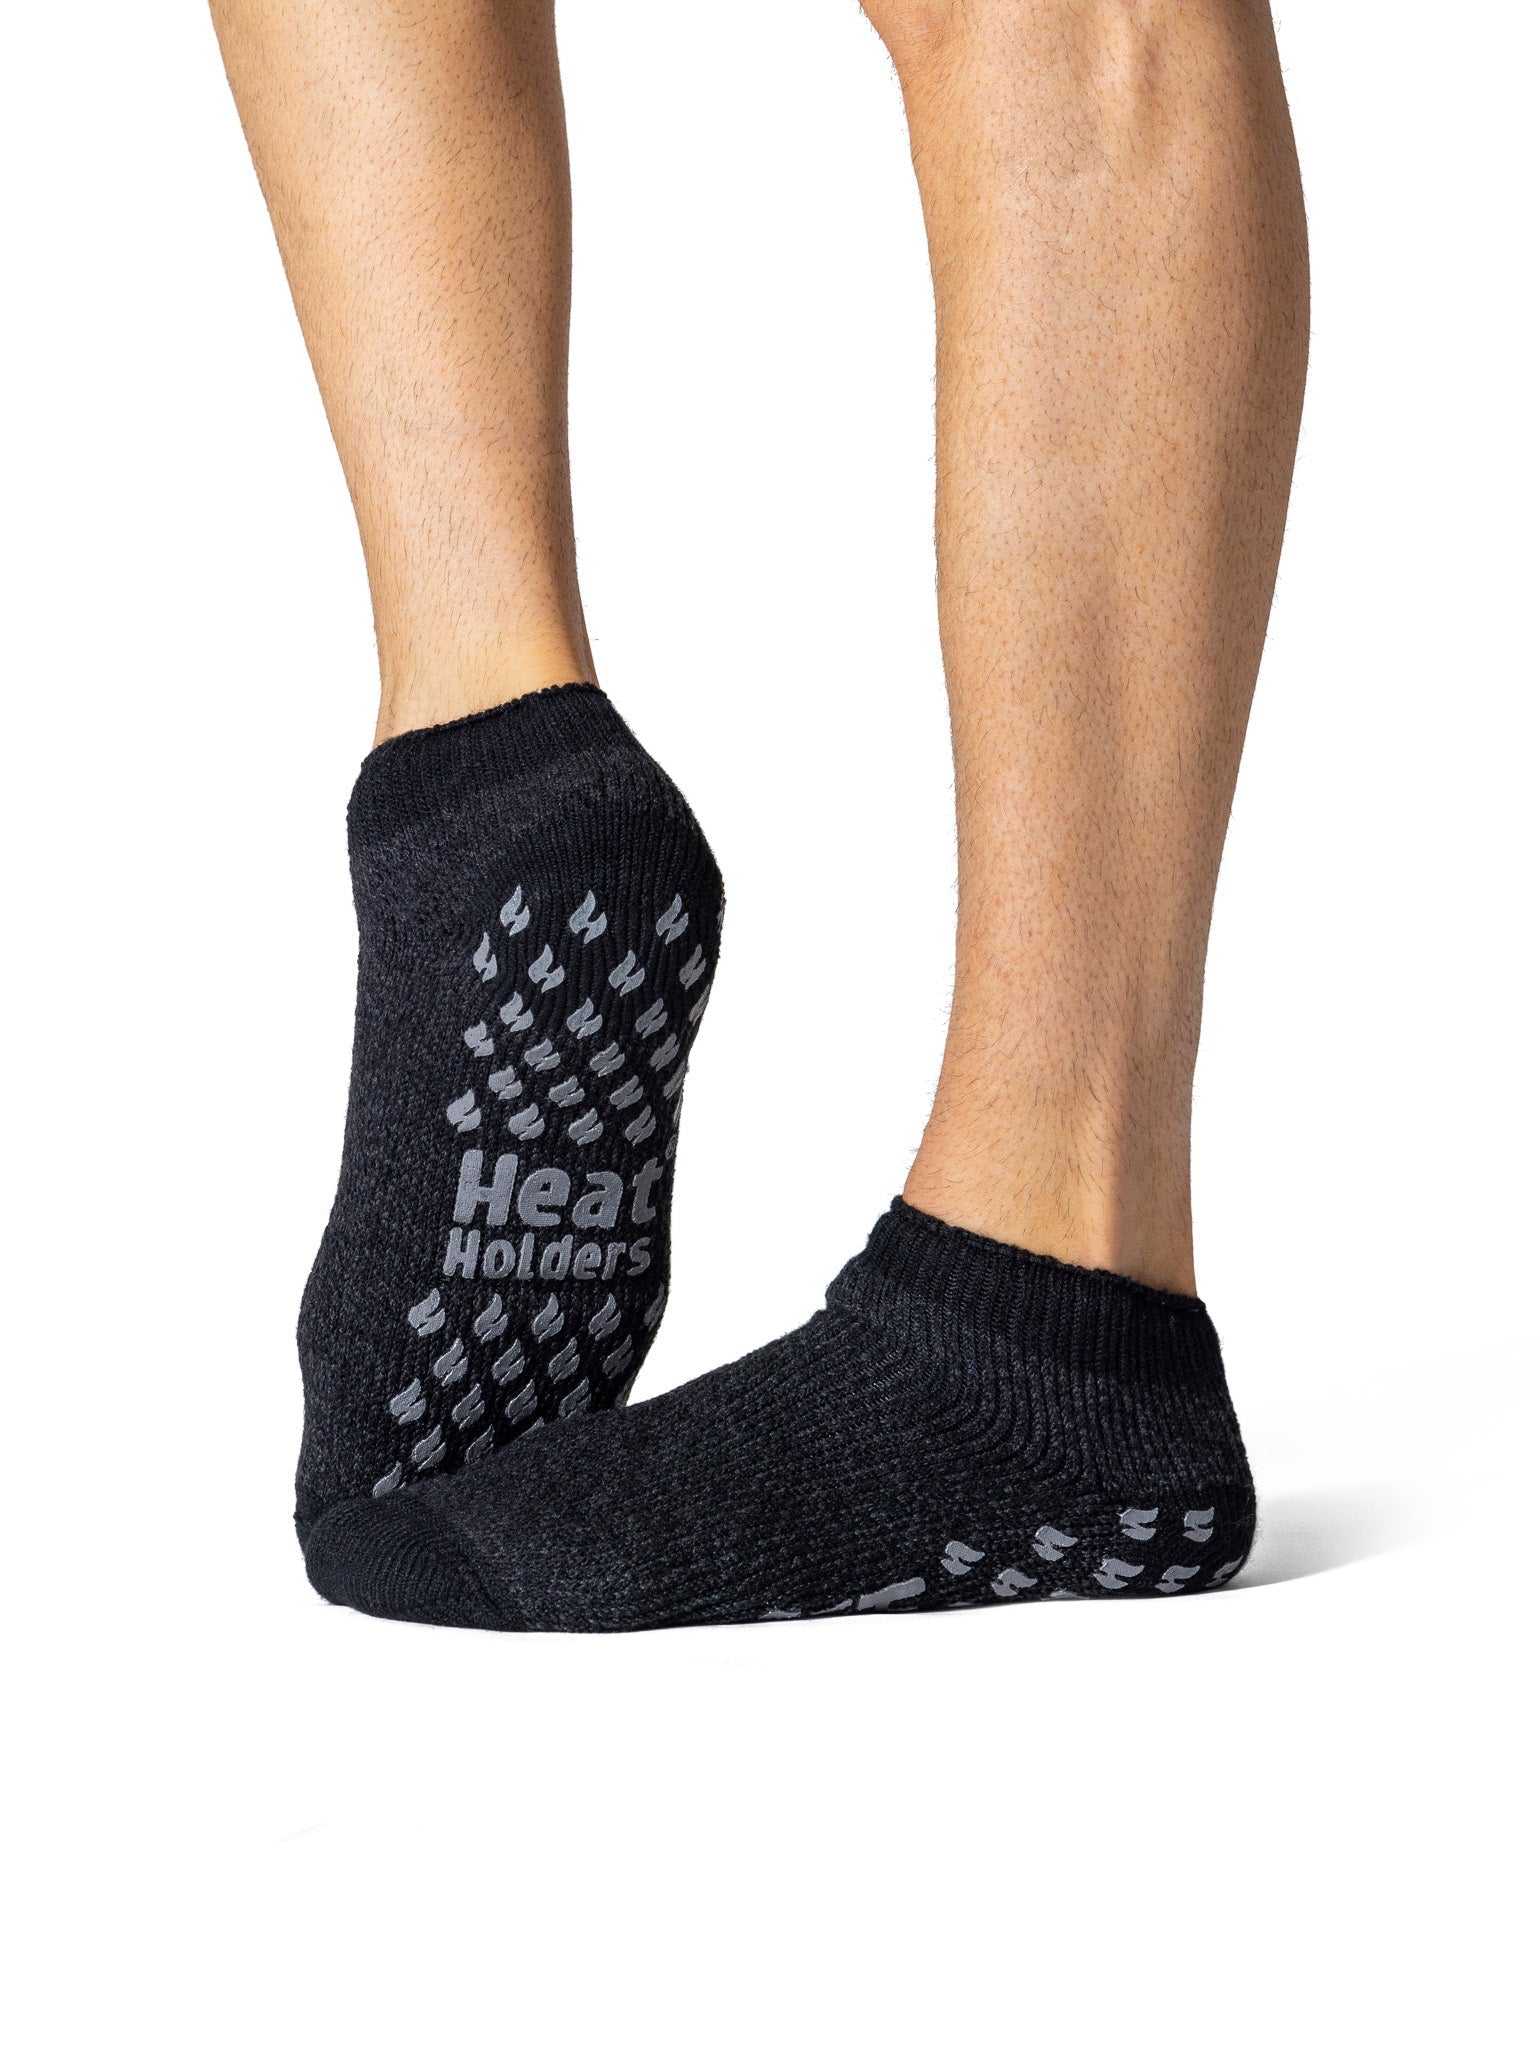 HEAT HOLDERS Ankle Slipper Socks - Men's Bigfoot